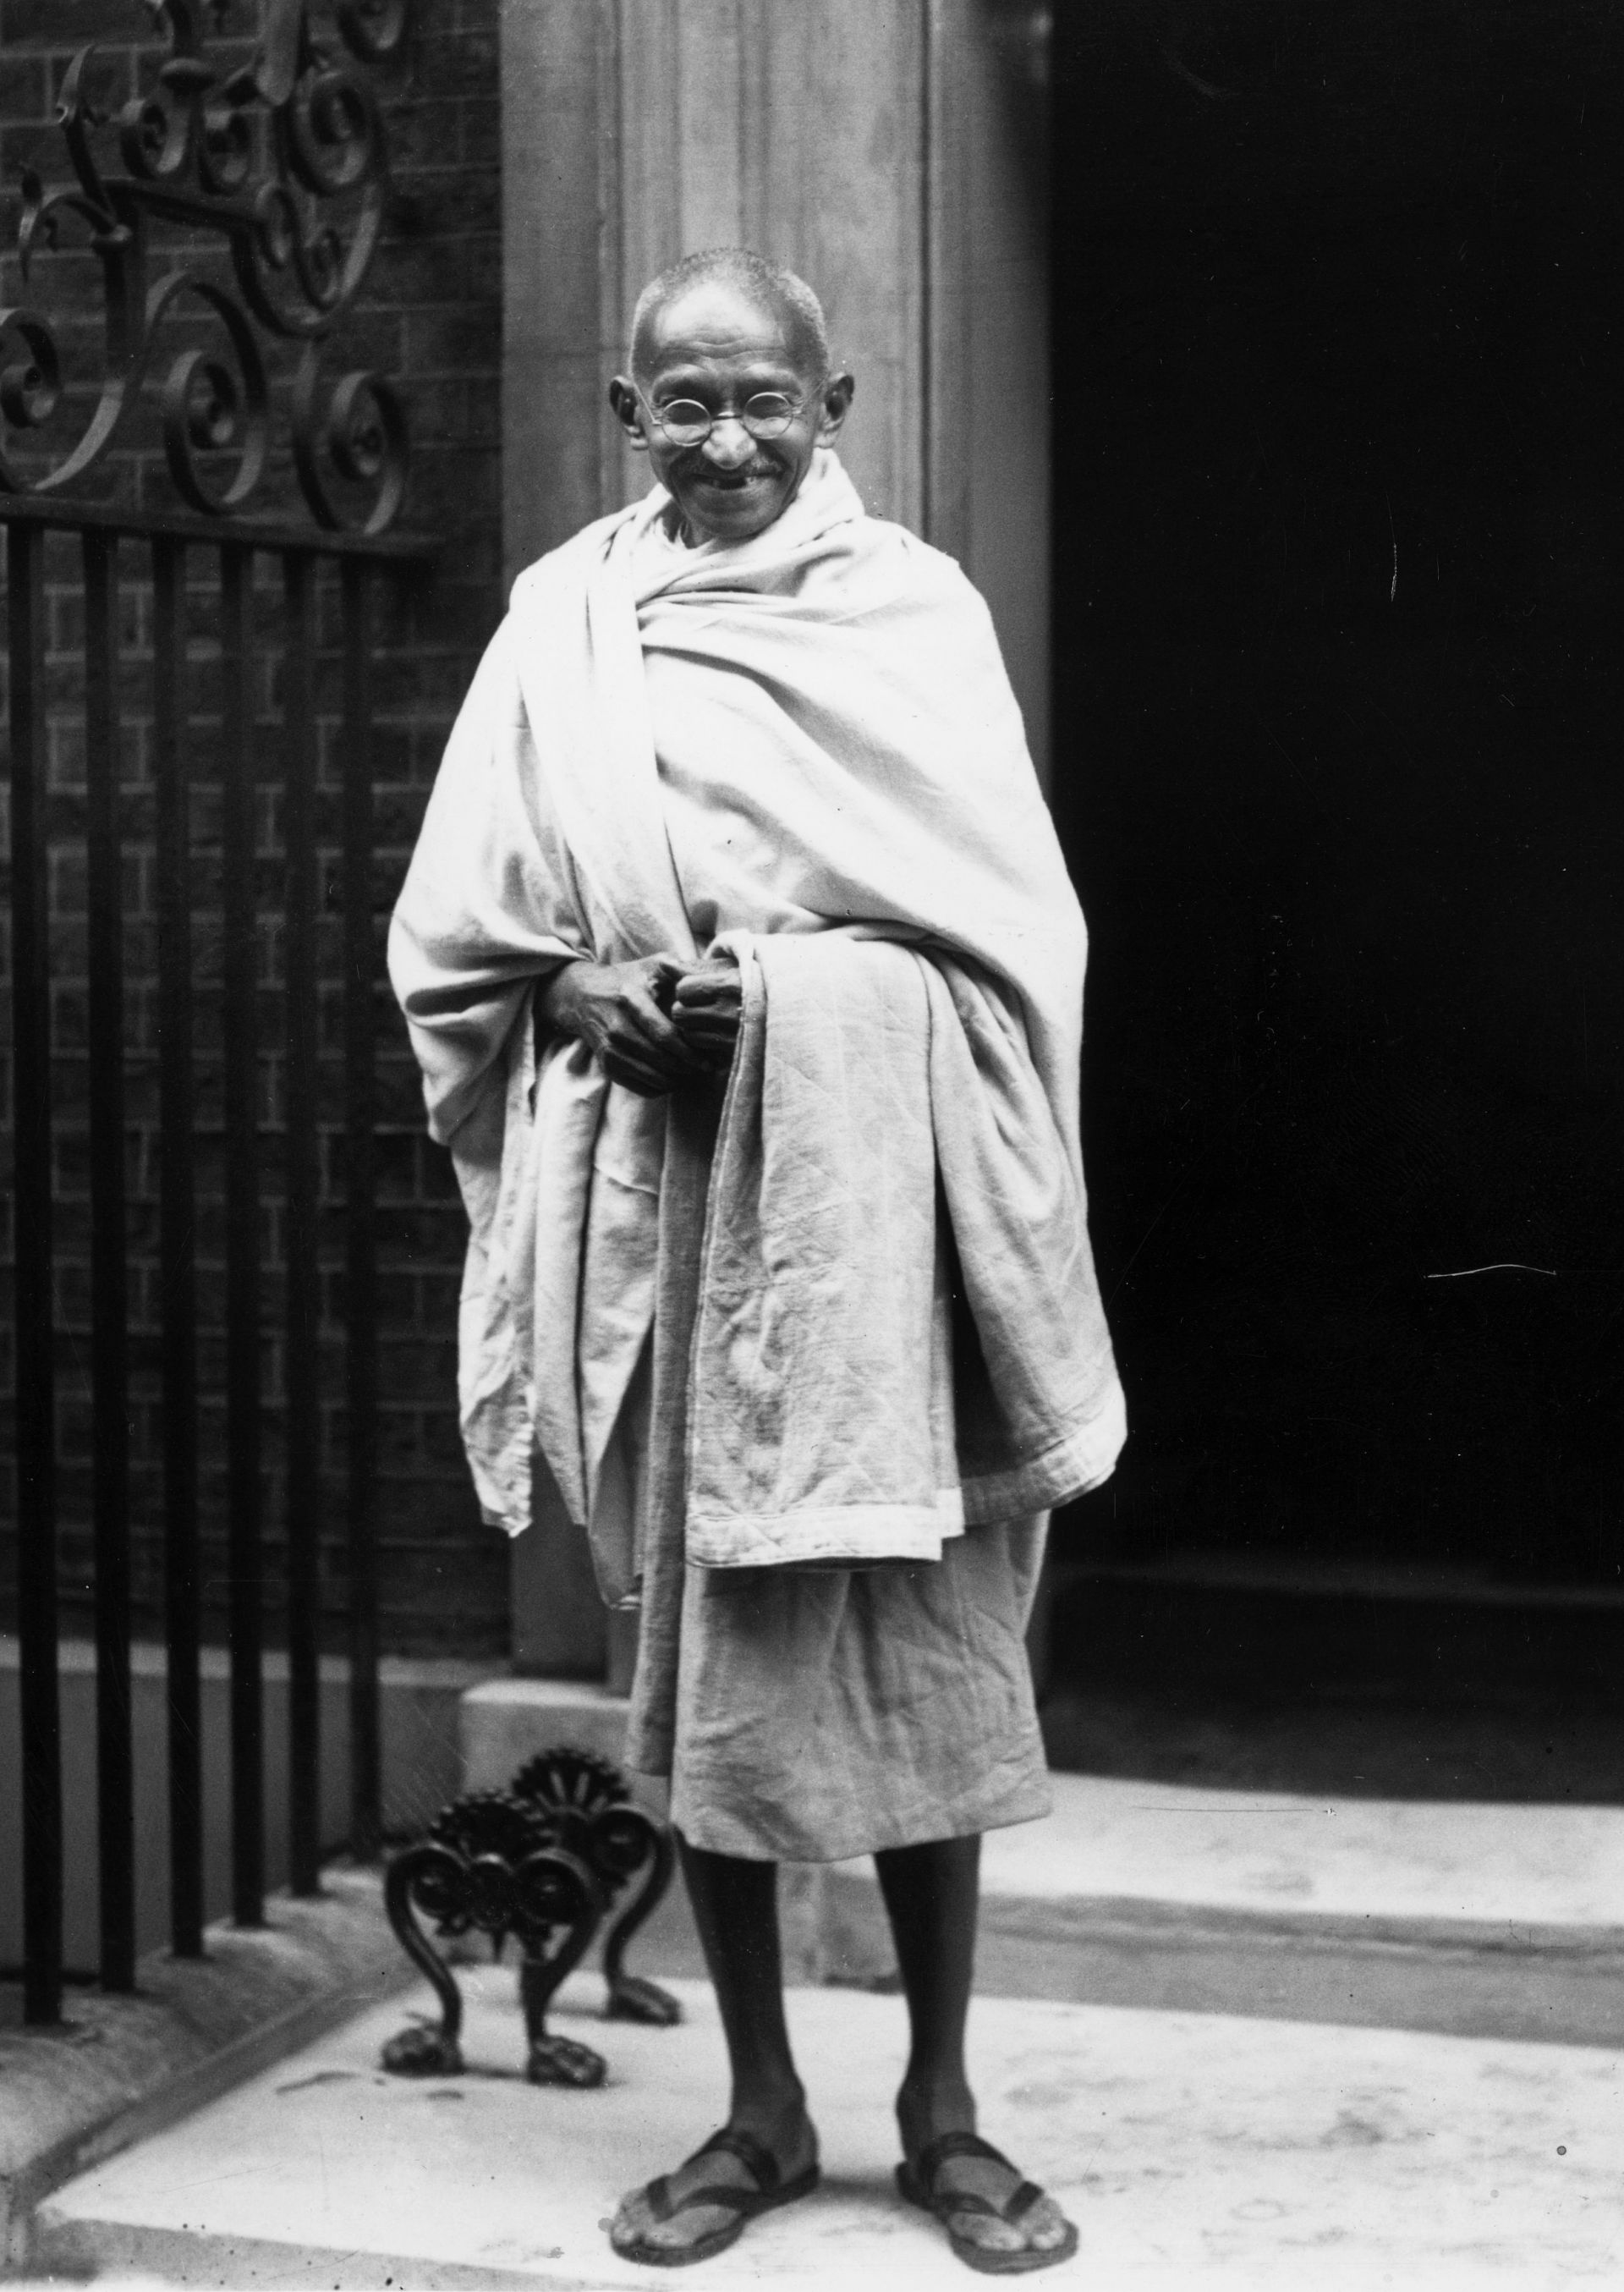 3 ноември 1931 г.: Махатма Ганди пред Даунинг стрийт 10 в Лондон, за да присъства на кръглата маса за индийската конституционна реформа